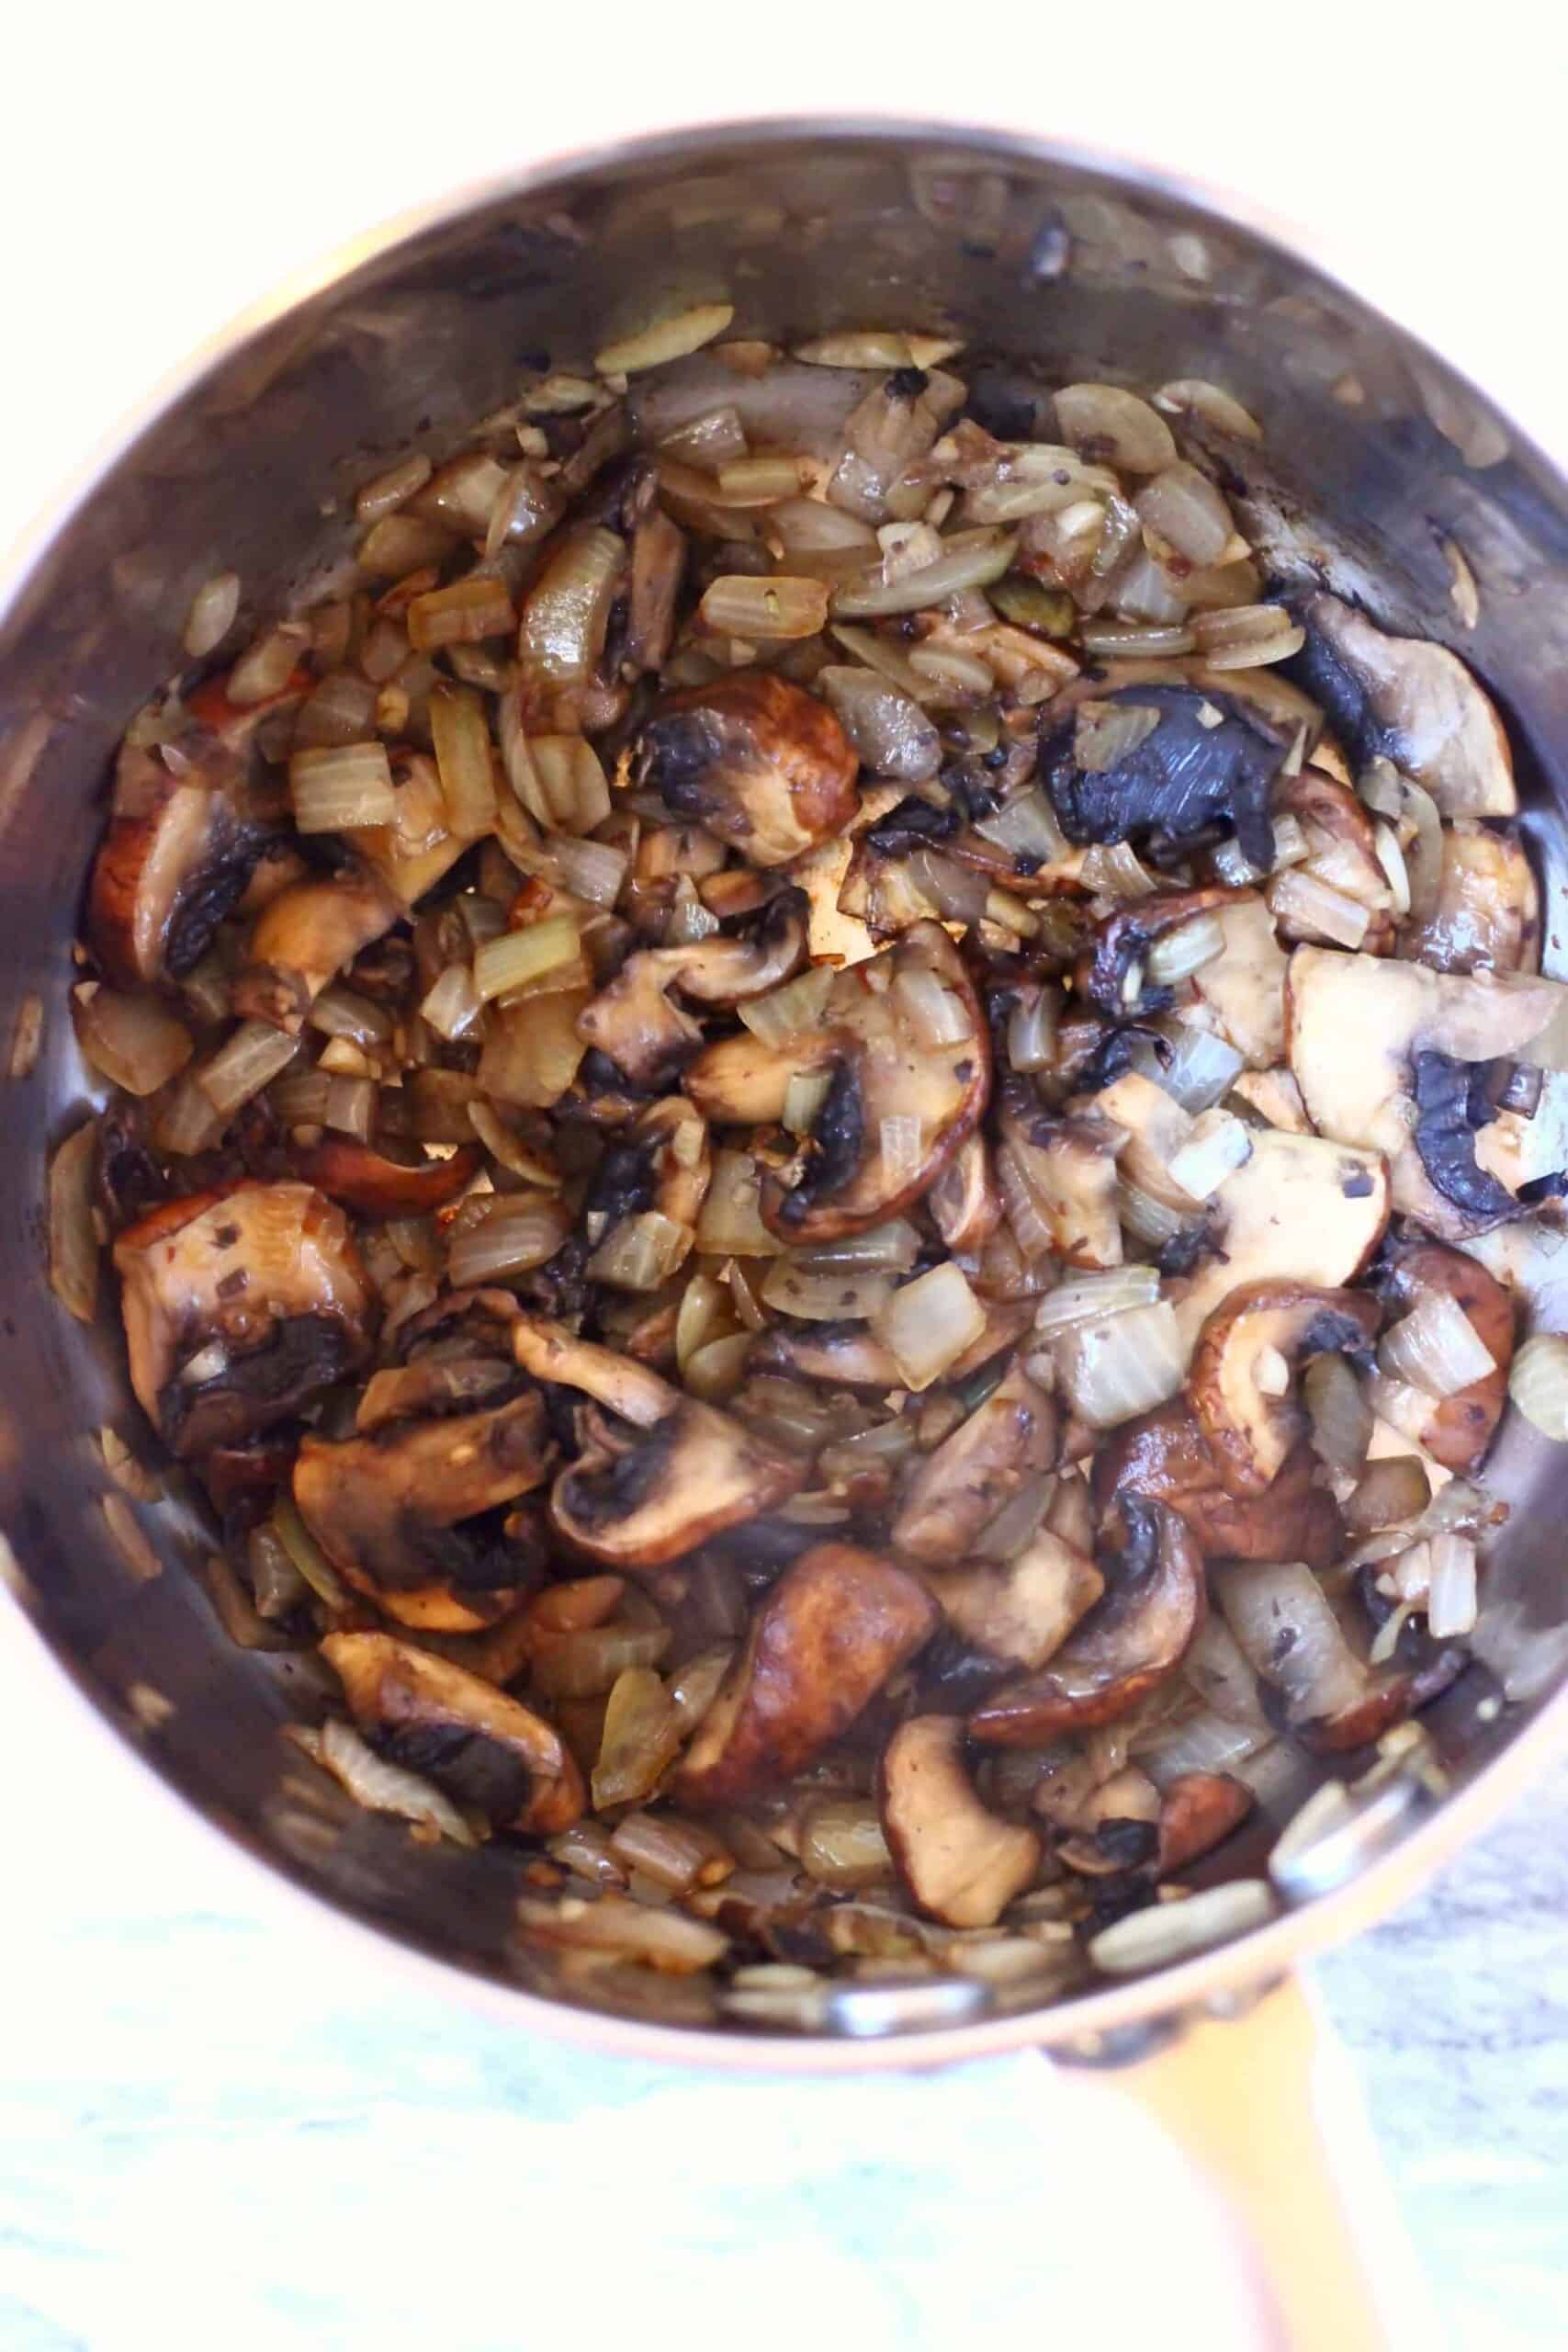 Sliced mushrooms in a pan